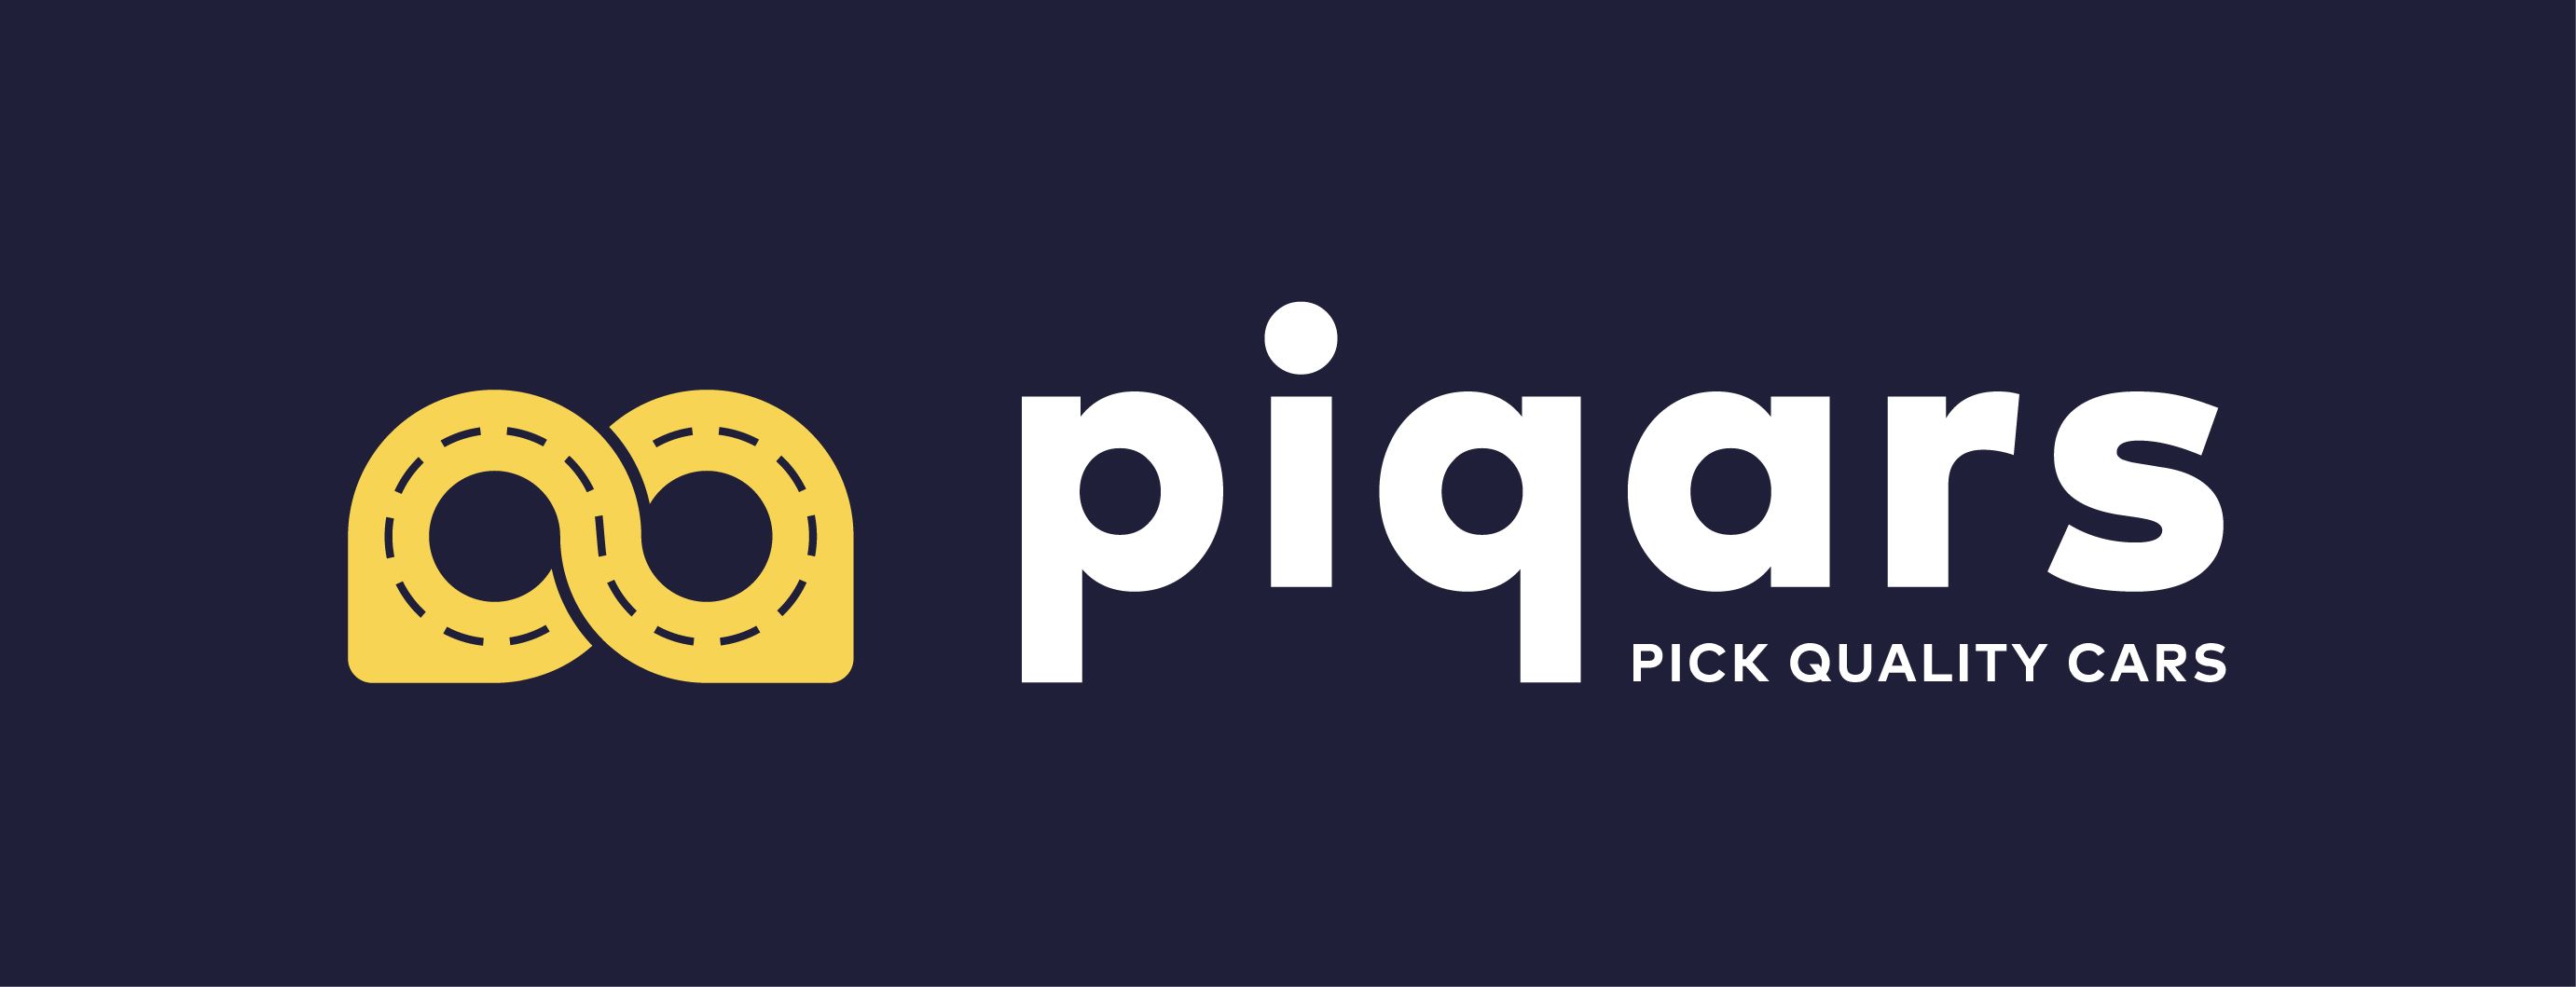 Piqars es la nueva plataforma de subastas de coches de calidad: transparente y sin dolores de cabeza